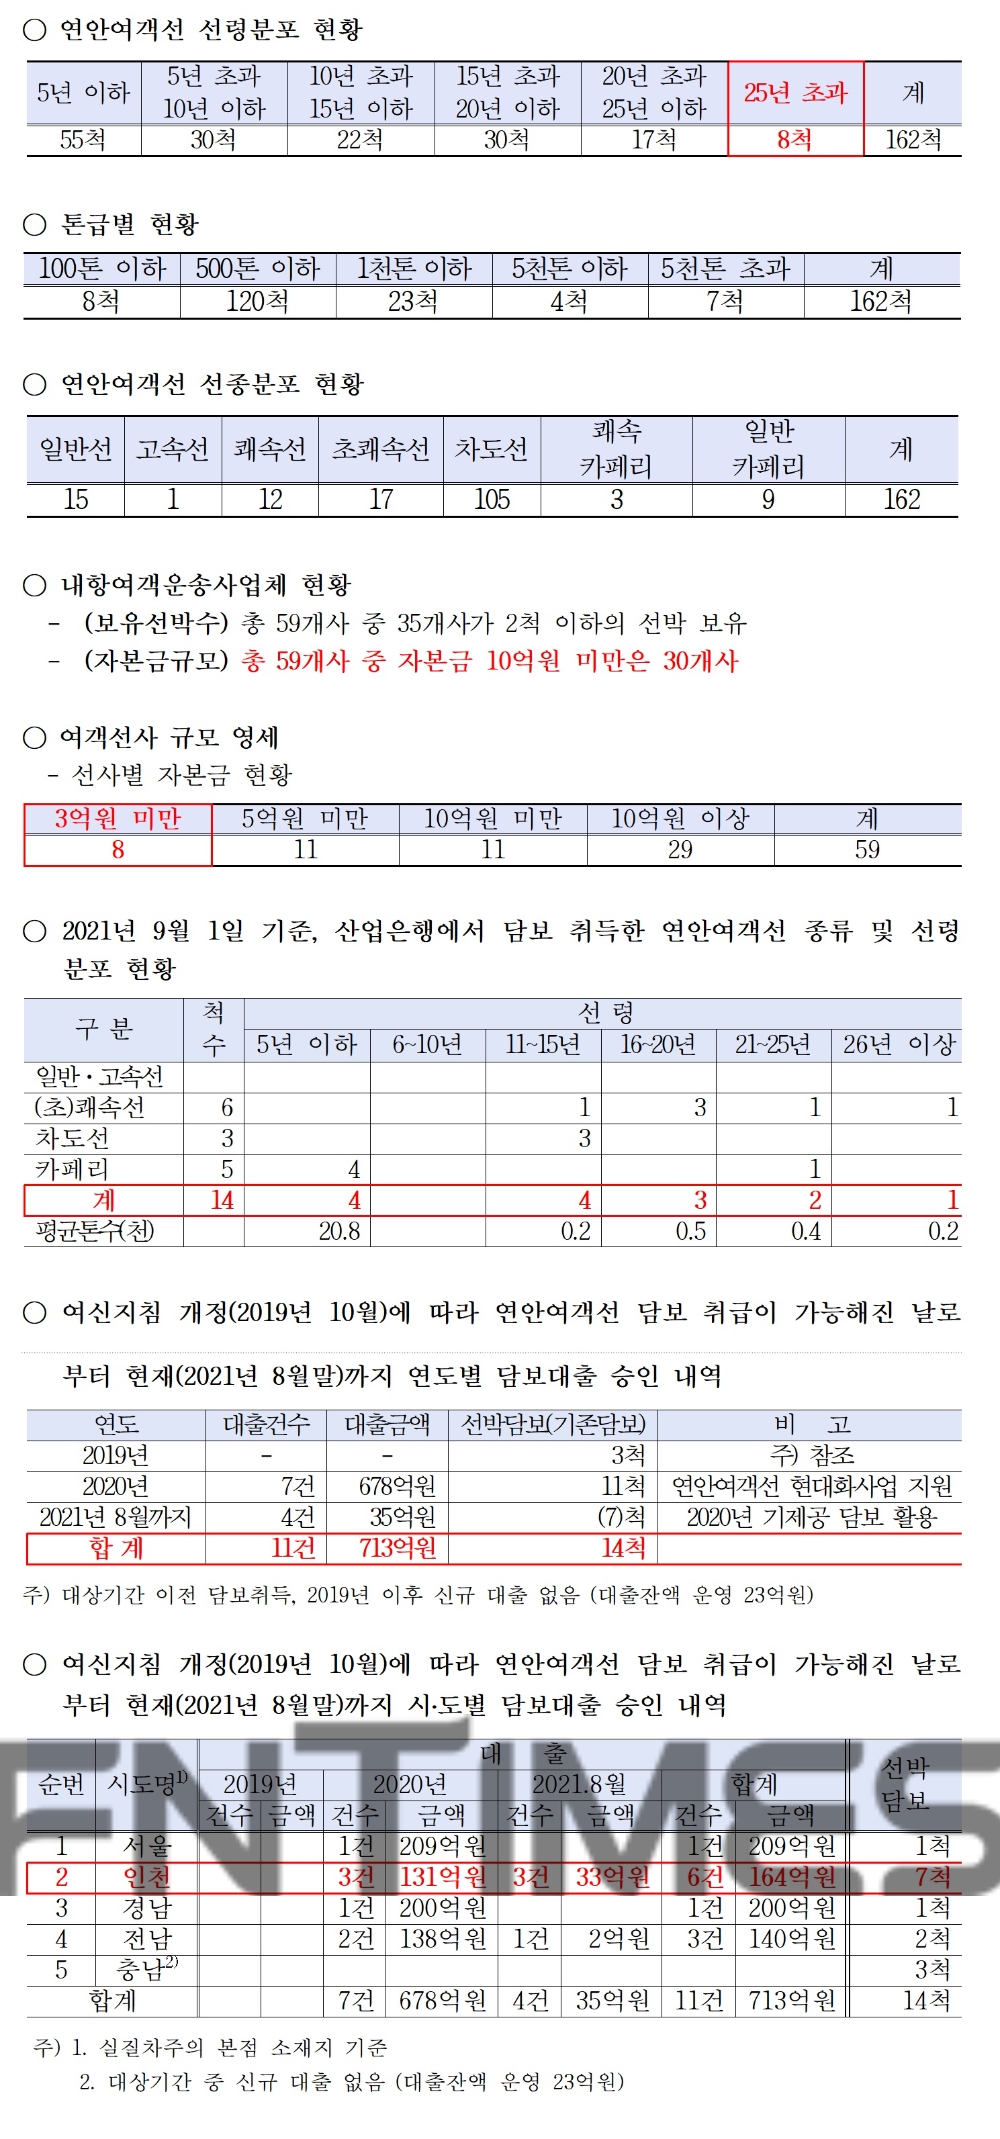 국내 연안여객선 현황 및 한국산업은행 연안여객선 담보 대출 실적./자료=한국산업은행